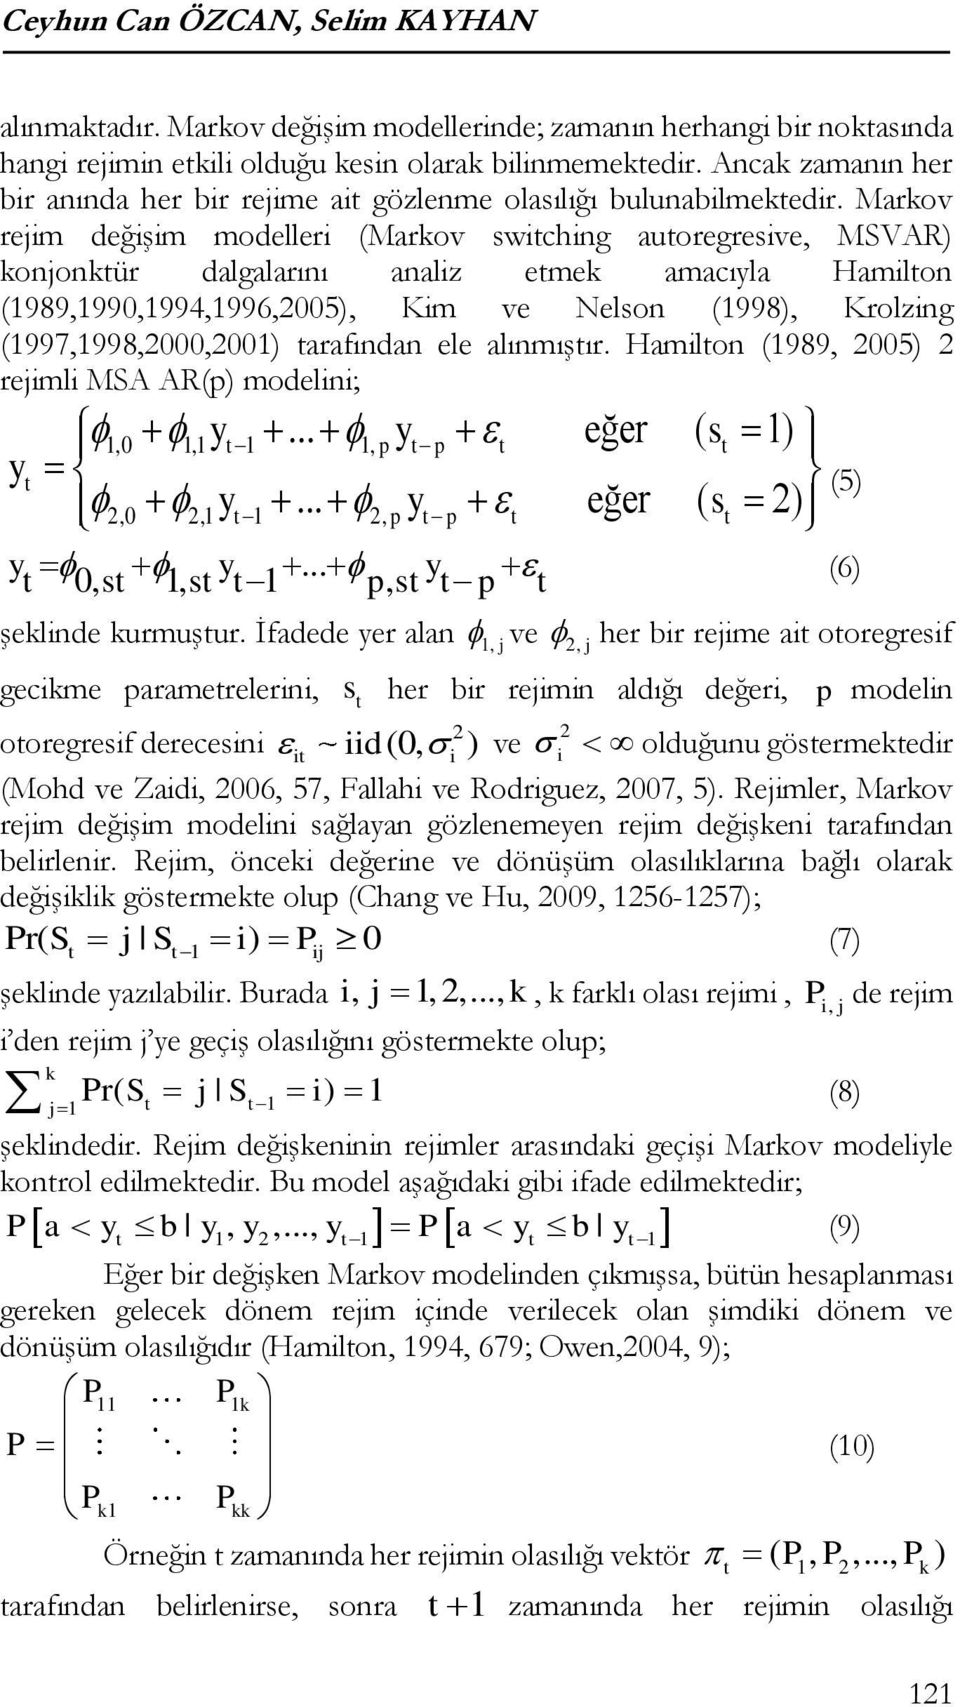 Markov rejim değişim modelleri (Markov swiching auoregresive, MSVAR) konjonkür dalgalarını analiz emek amacıyla Hamilon (1989,1990,1994,1996,2005), Kim ve Nelson (1998), Krolzing